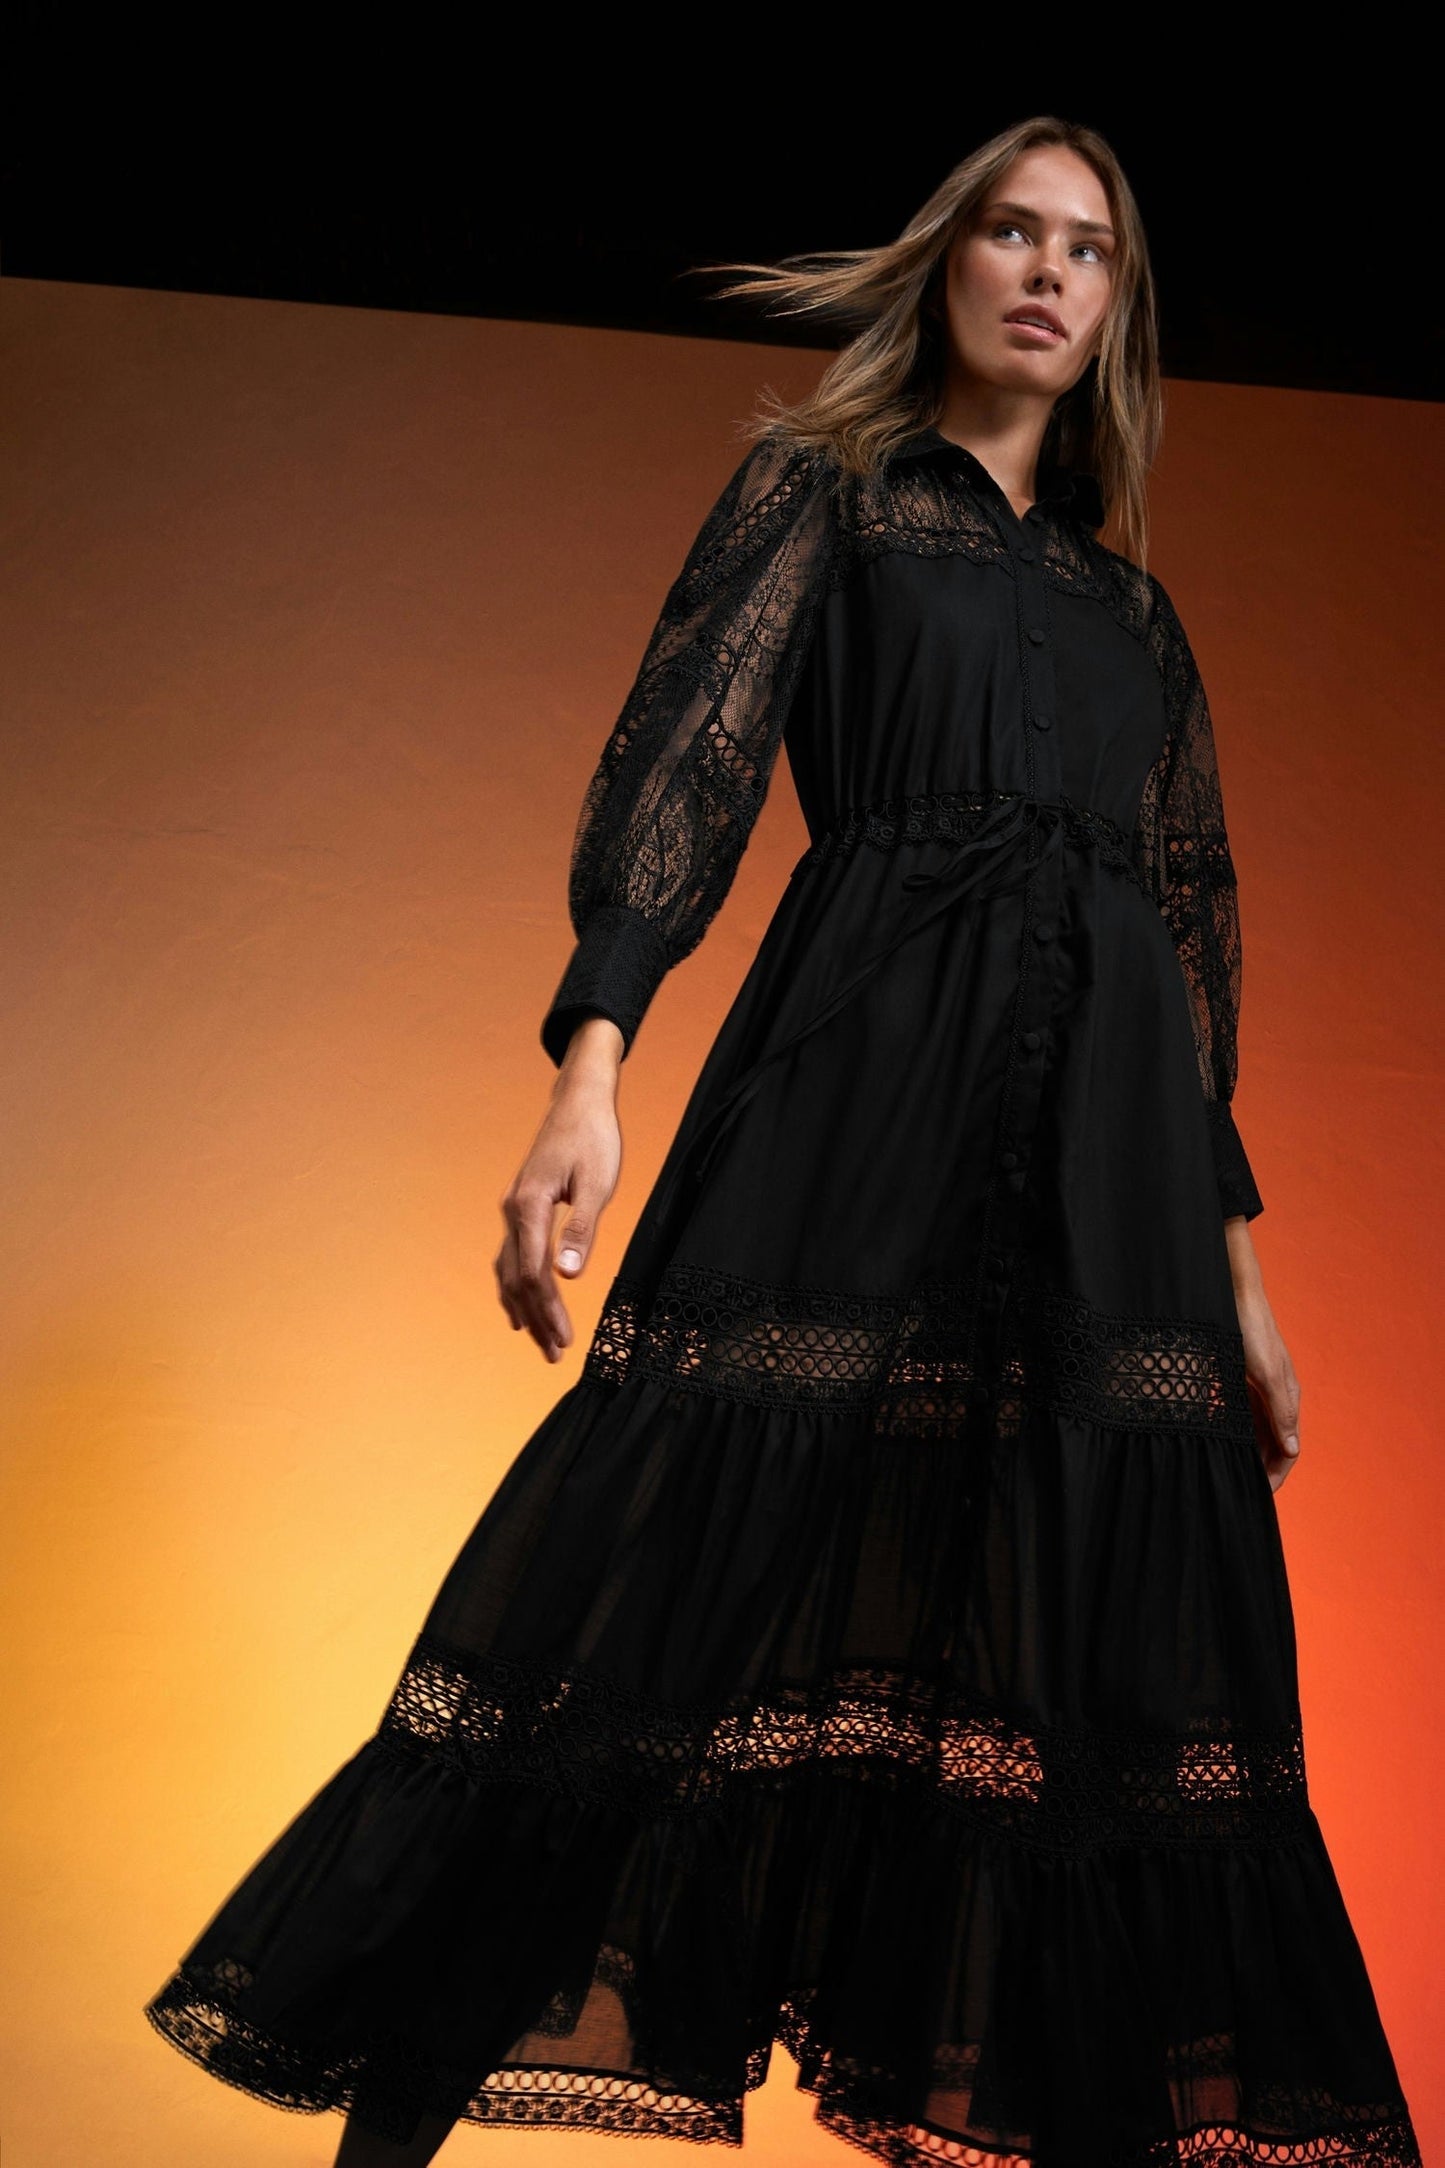 Charo Ruiz Lucil Long Dress - Premium Long dress from Marina St Barth - Just $849! Shop now at Marina St Barth